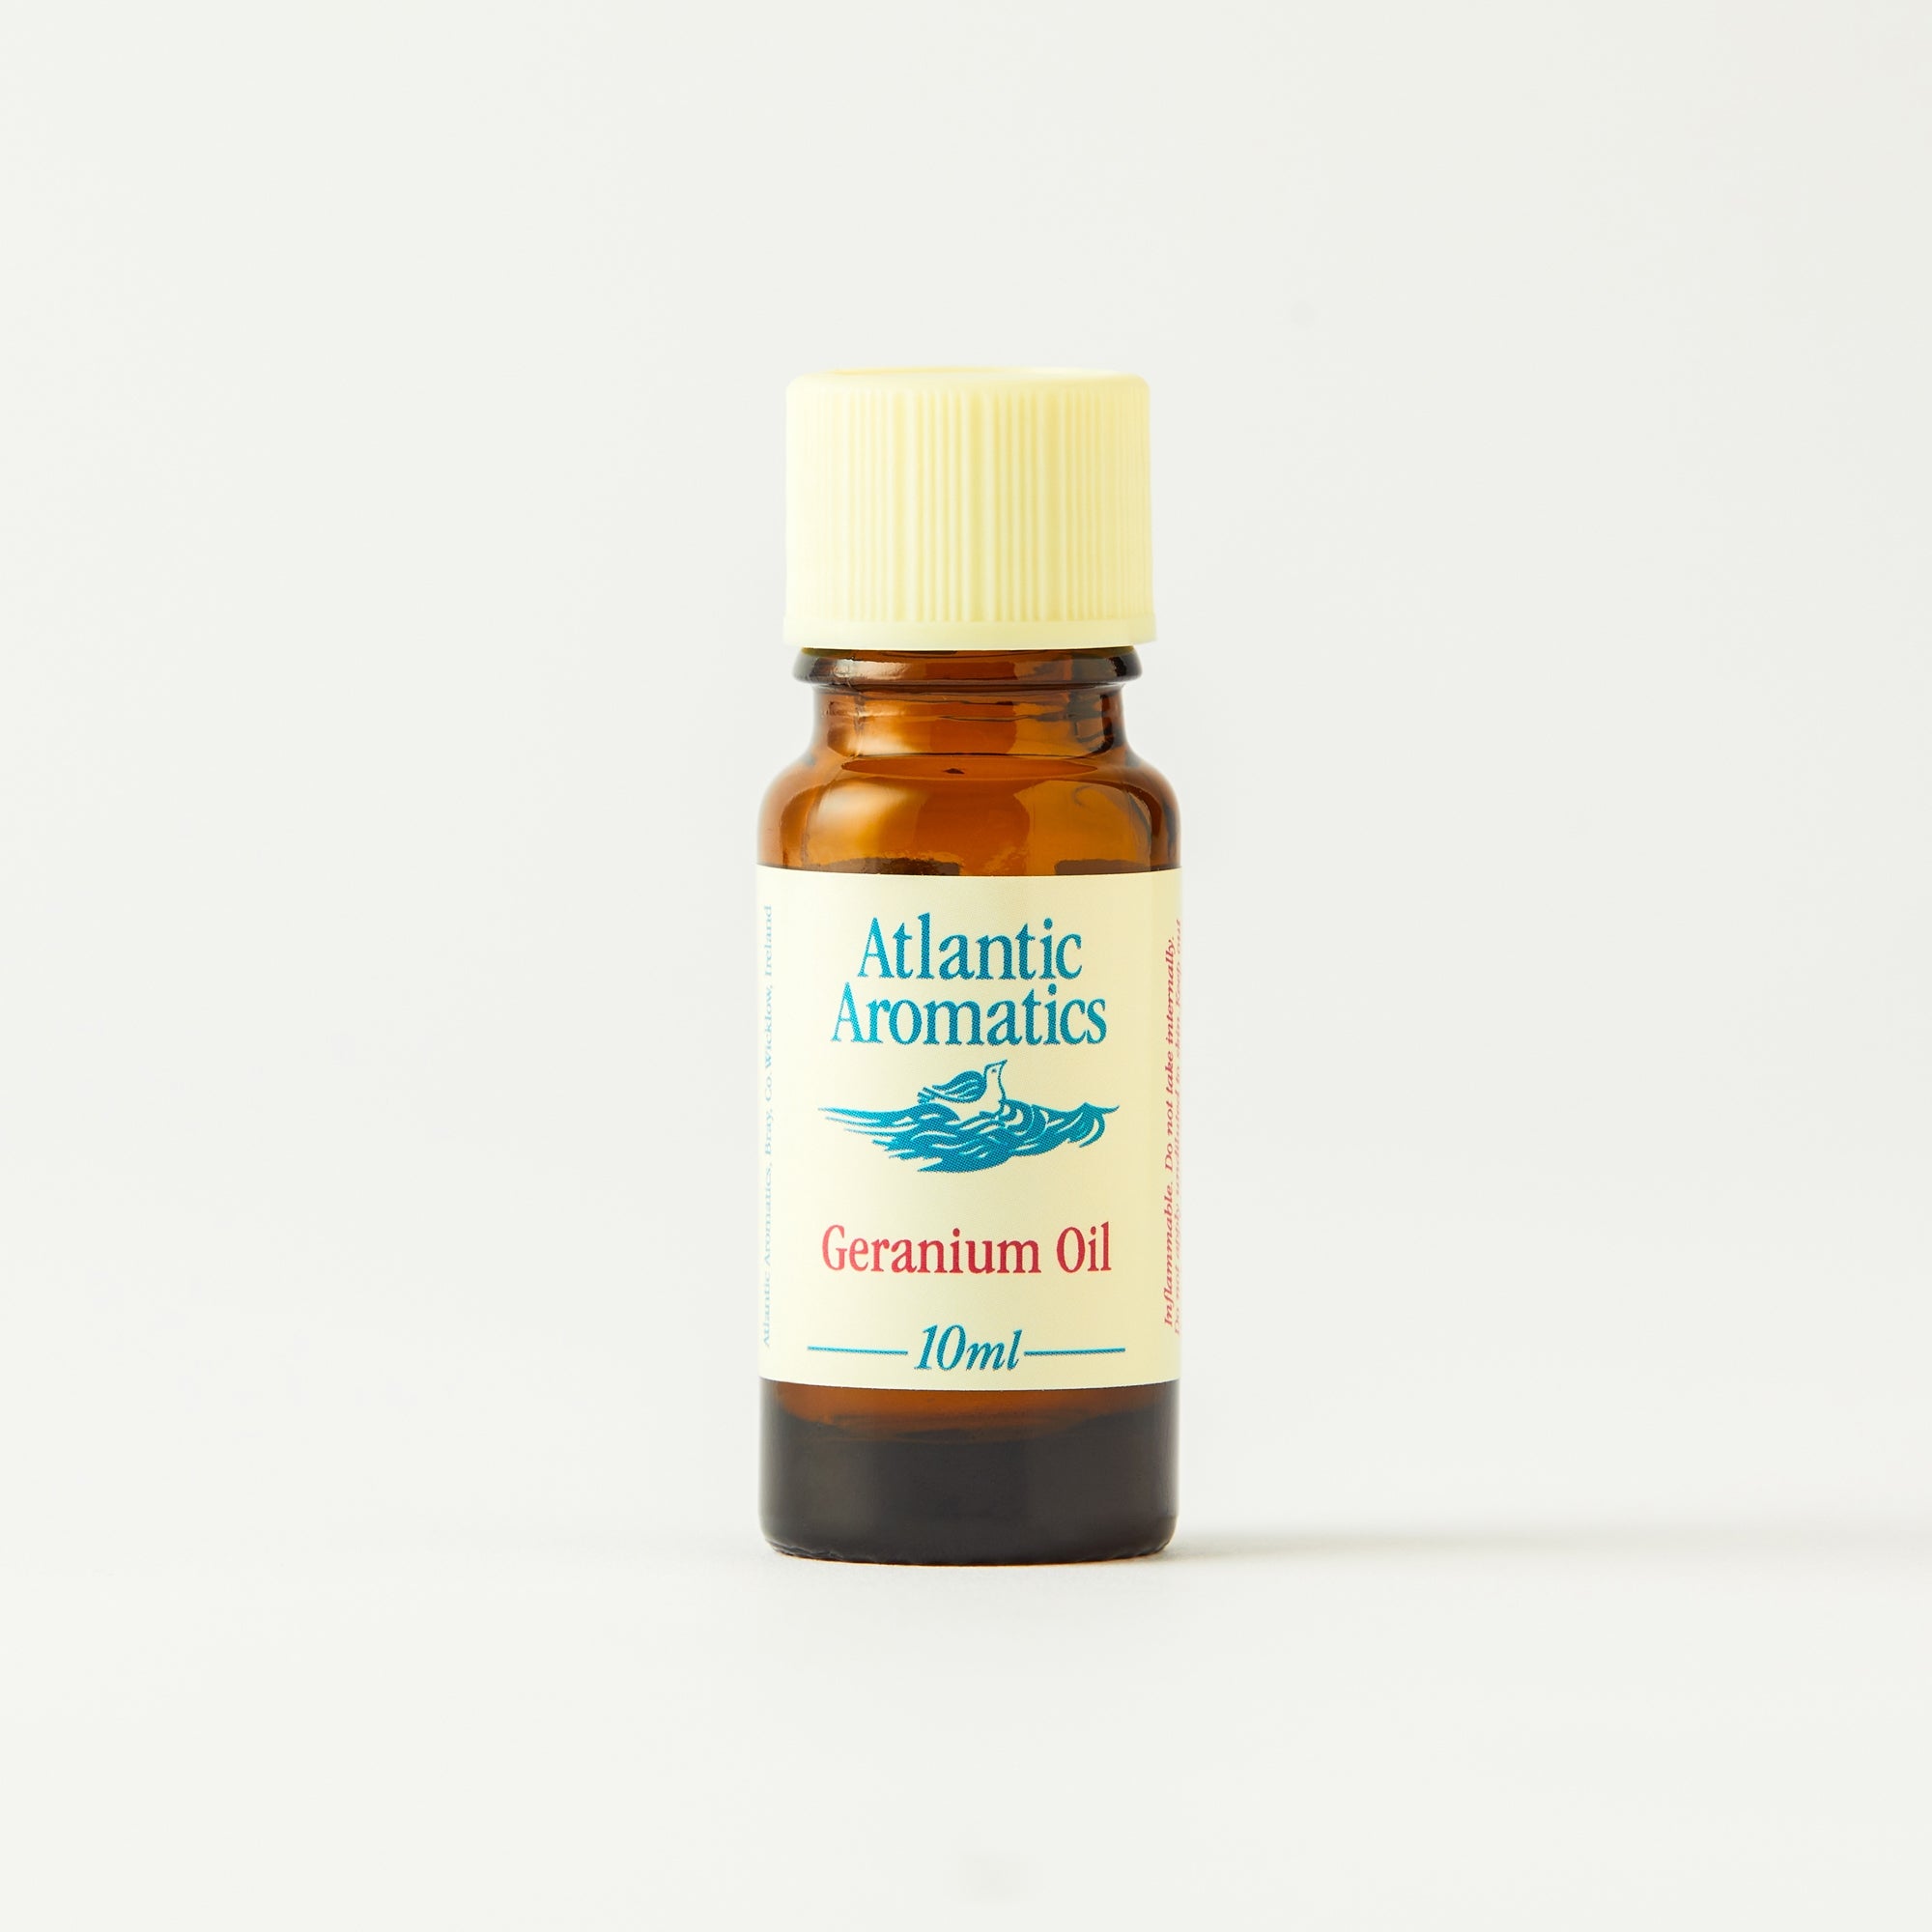 Atlantic Aromatics Geranium Oil